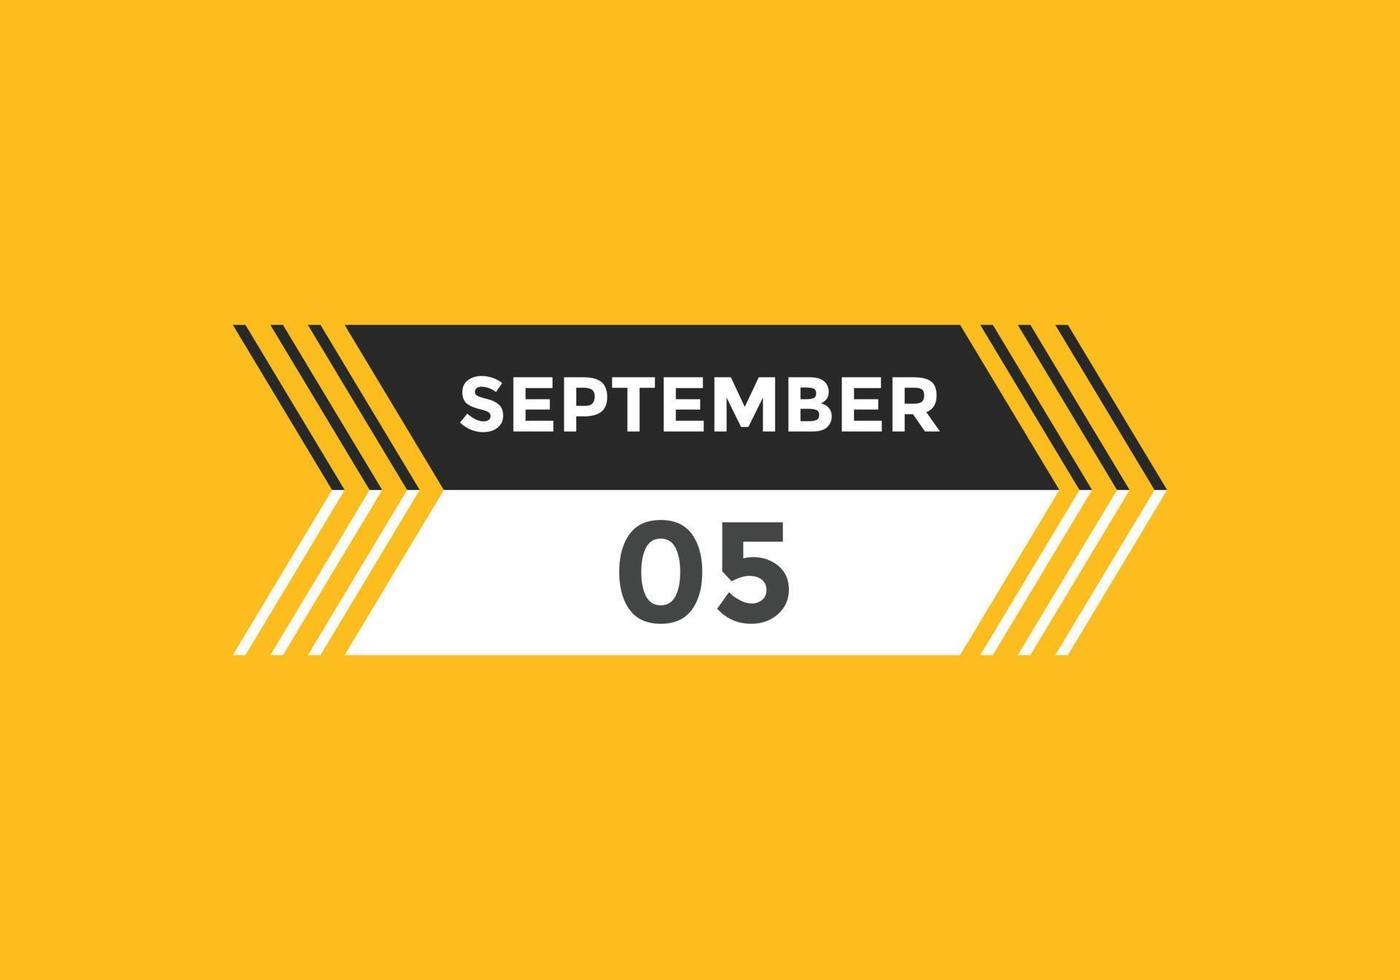 settembre 5 calendario promemoria. 5 ° settembre quotidiano calendario icona modello. calendario 5 ° settembre icona design modello. vettore illustrazione